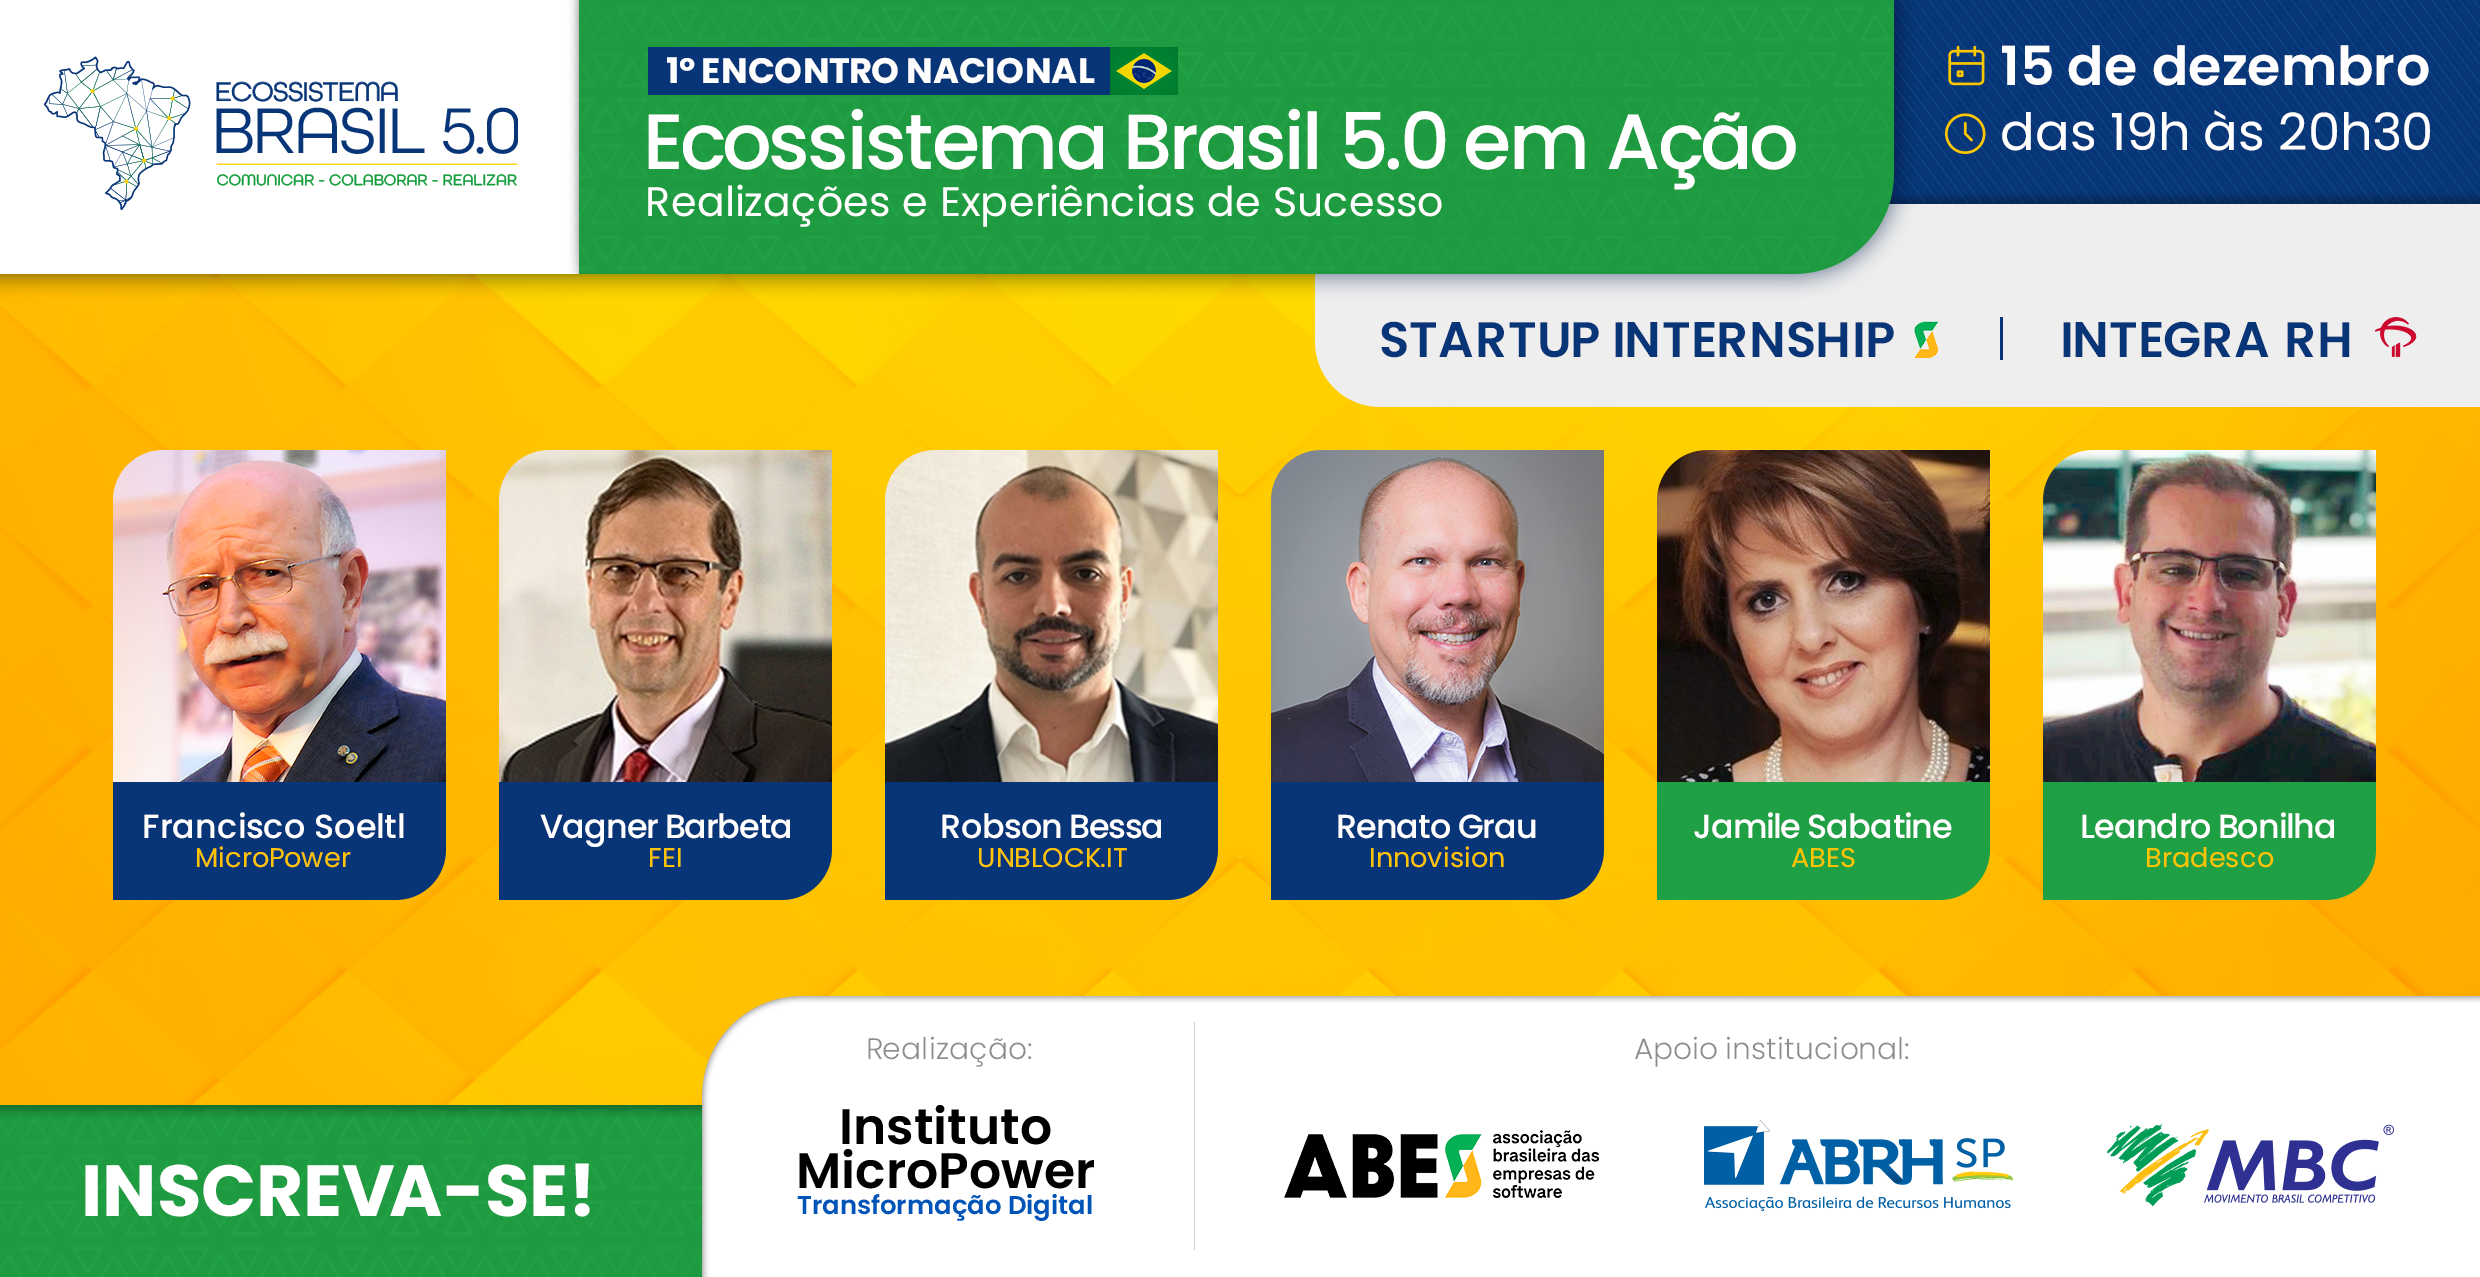 Título do evento no topo da imagem "Ecossistema Brasil em Ação" e abaixo a foto de todos os participantes.